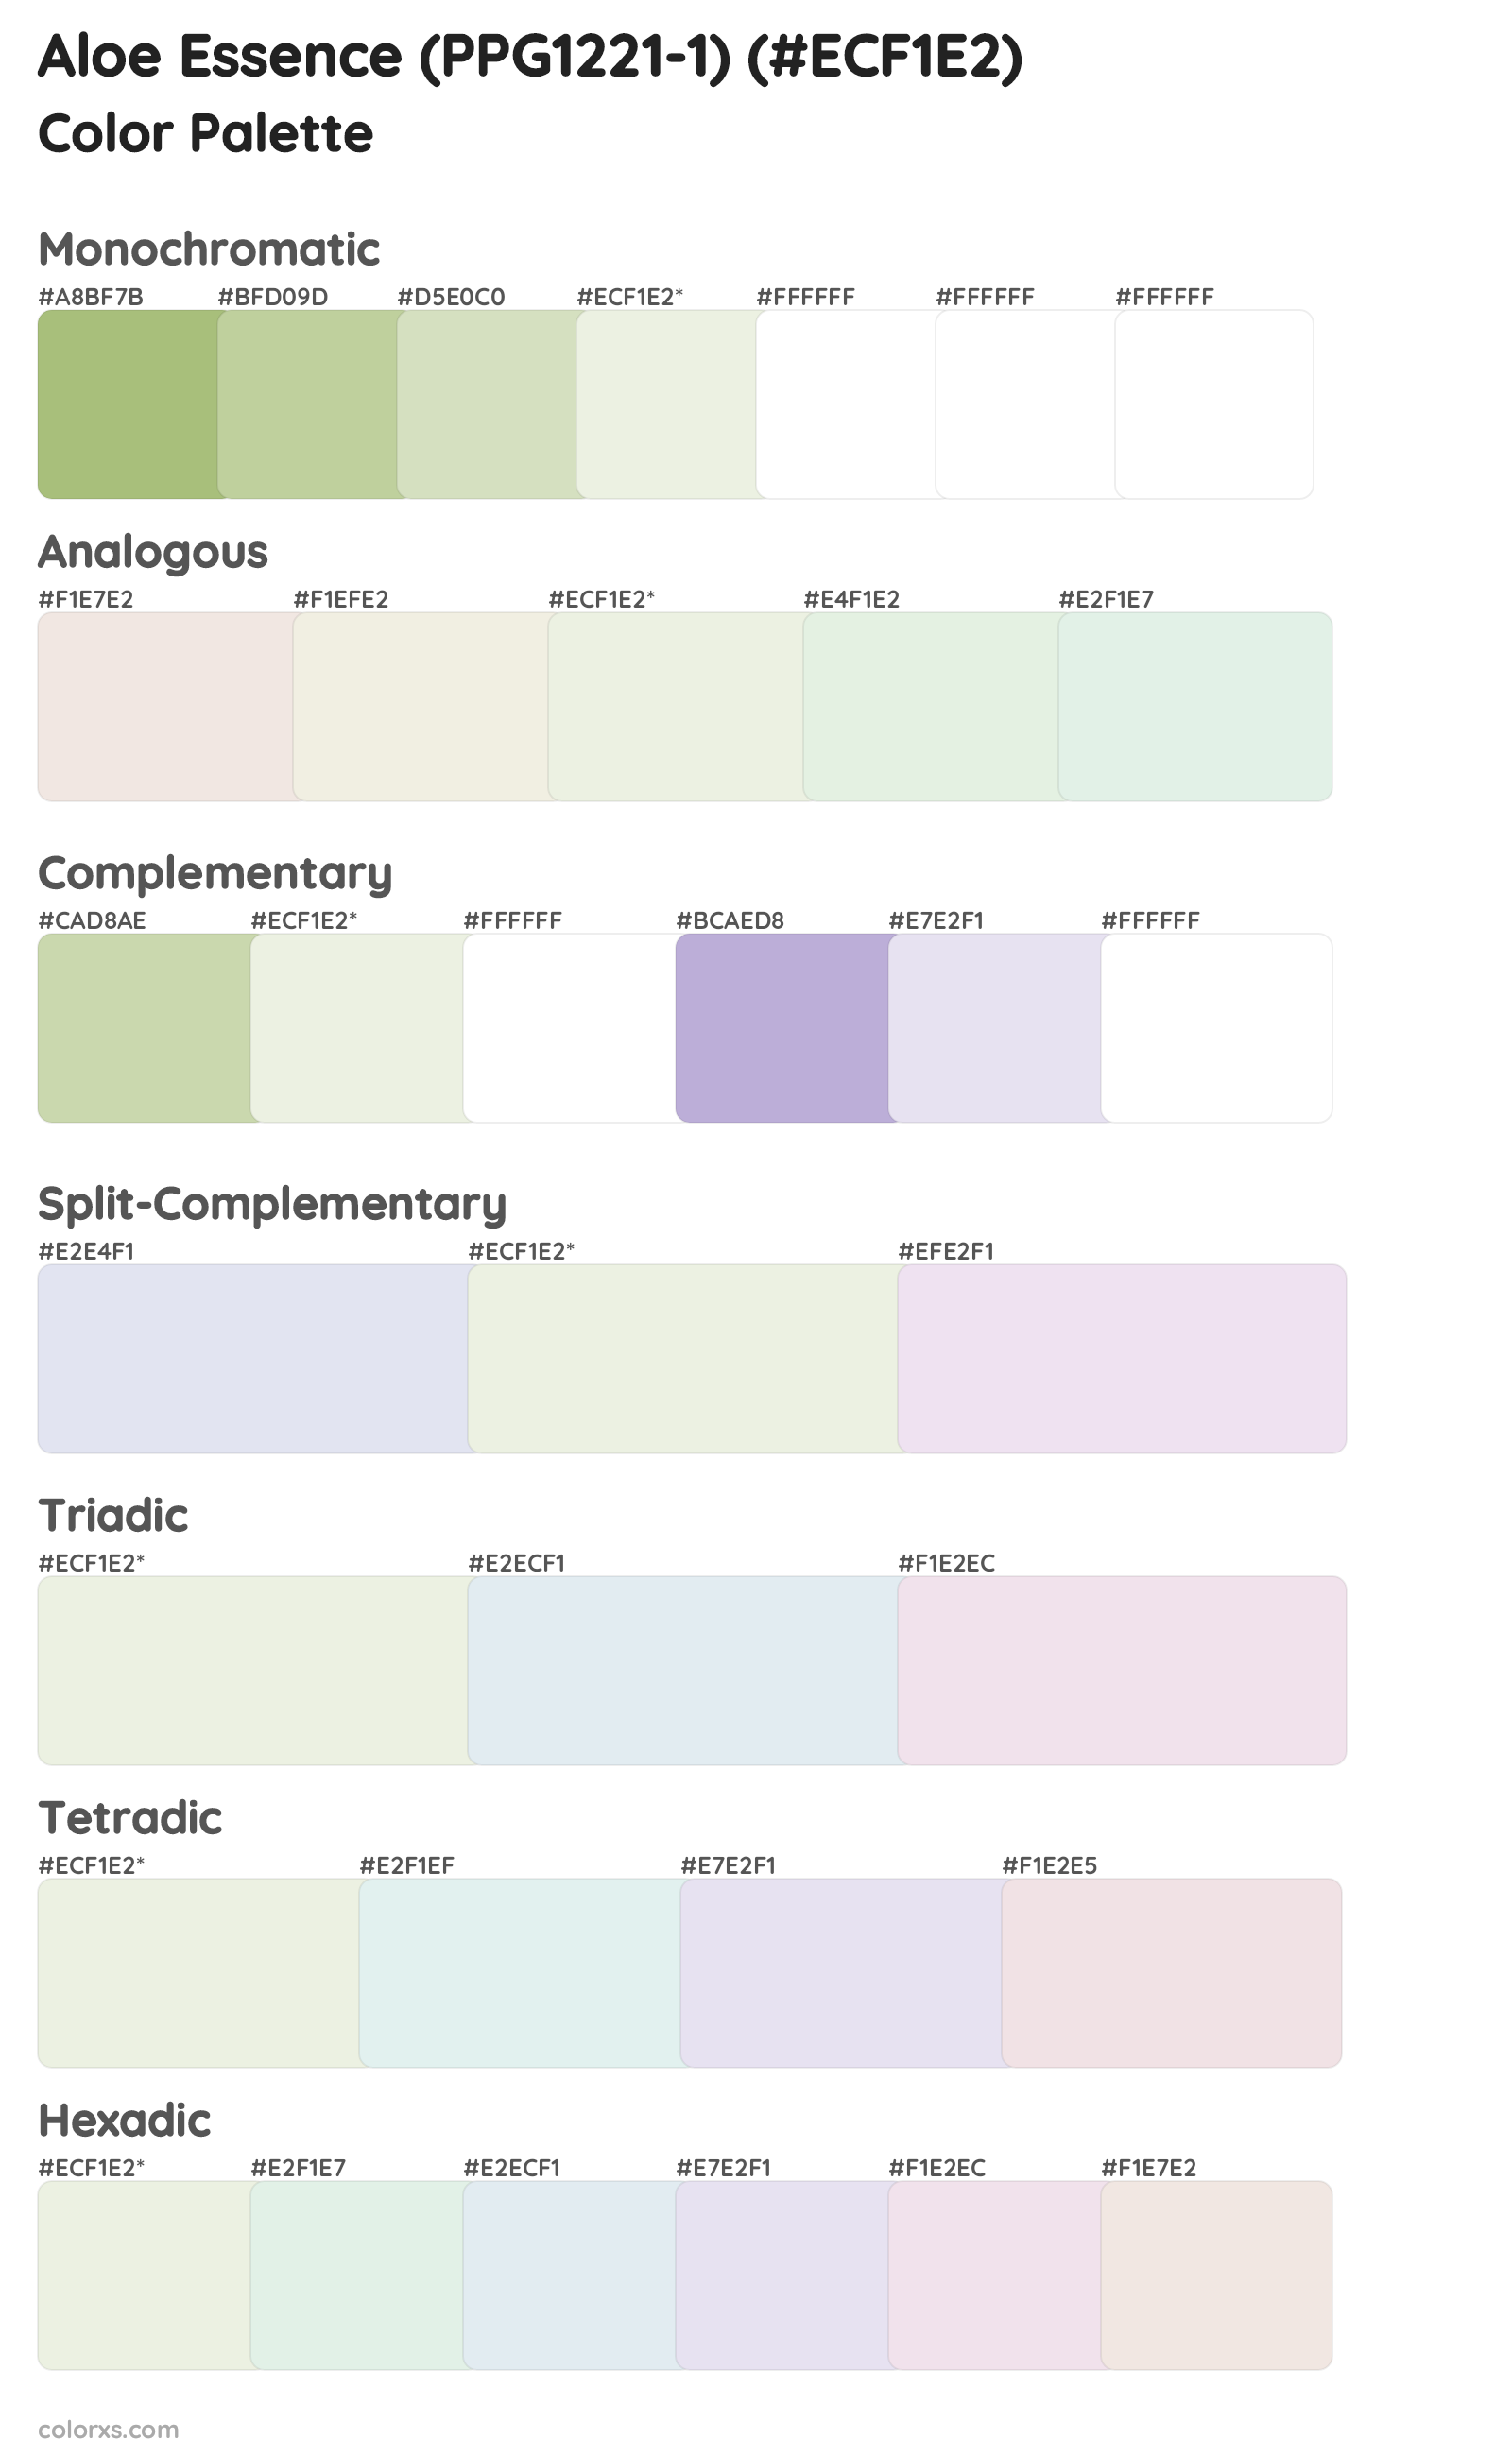 Aloe Essence (PPG1221-1) Color Scheme Palettes